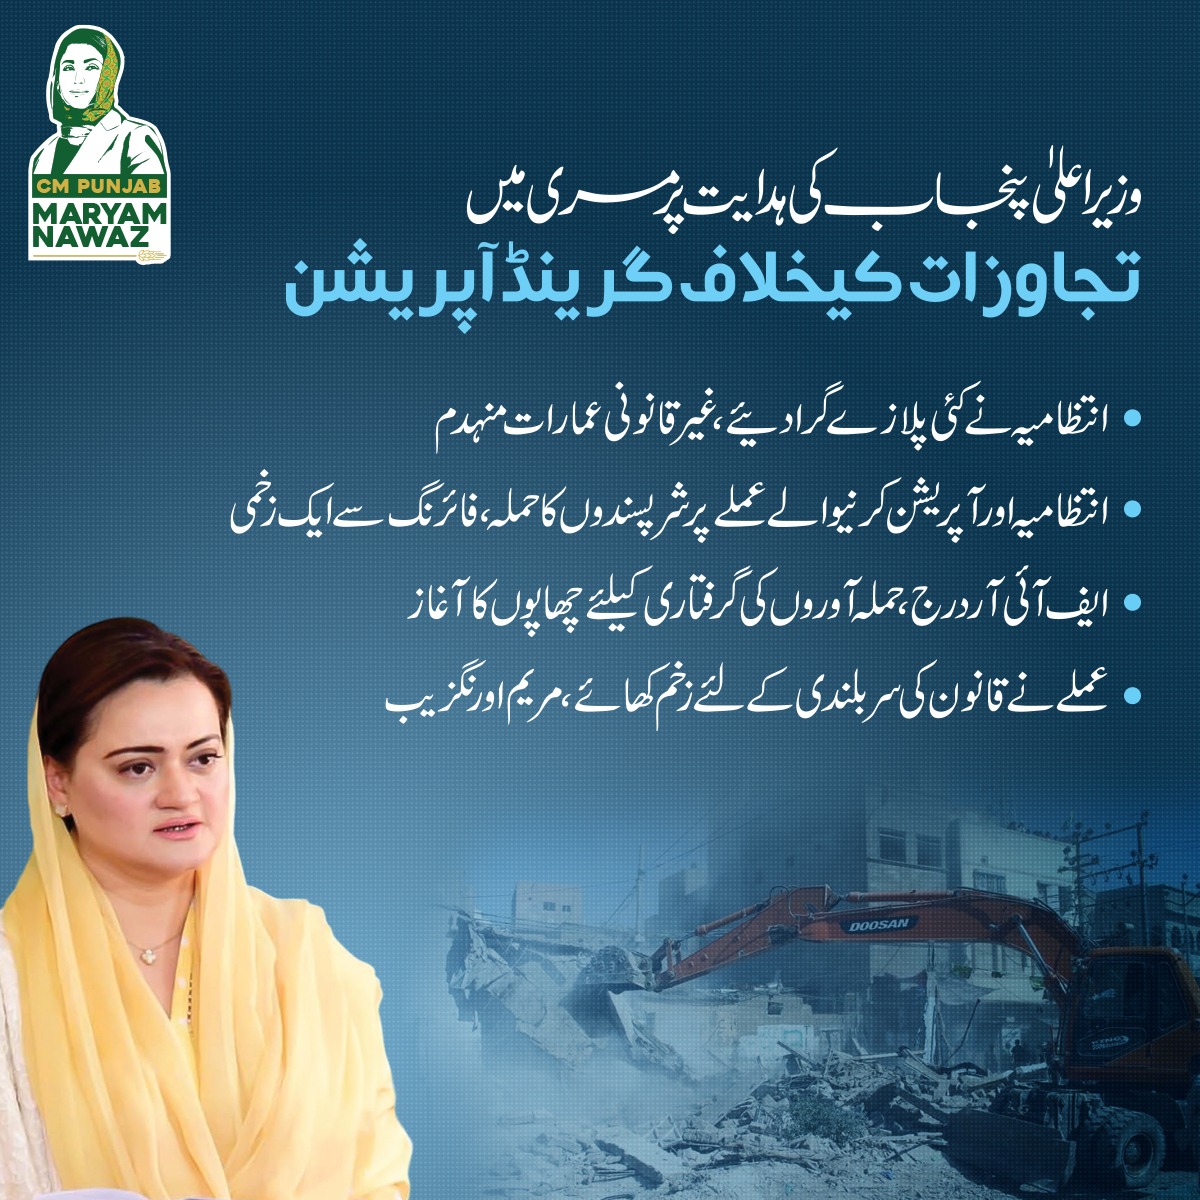 وزیراعلیٰ پنجاب کی ہدایت پر مری میں تجاوزات کیخلاف گرینڈ آپریشن
#PMLN #Murree #Punjab